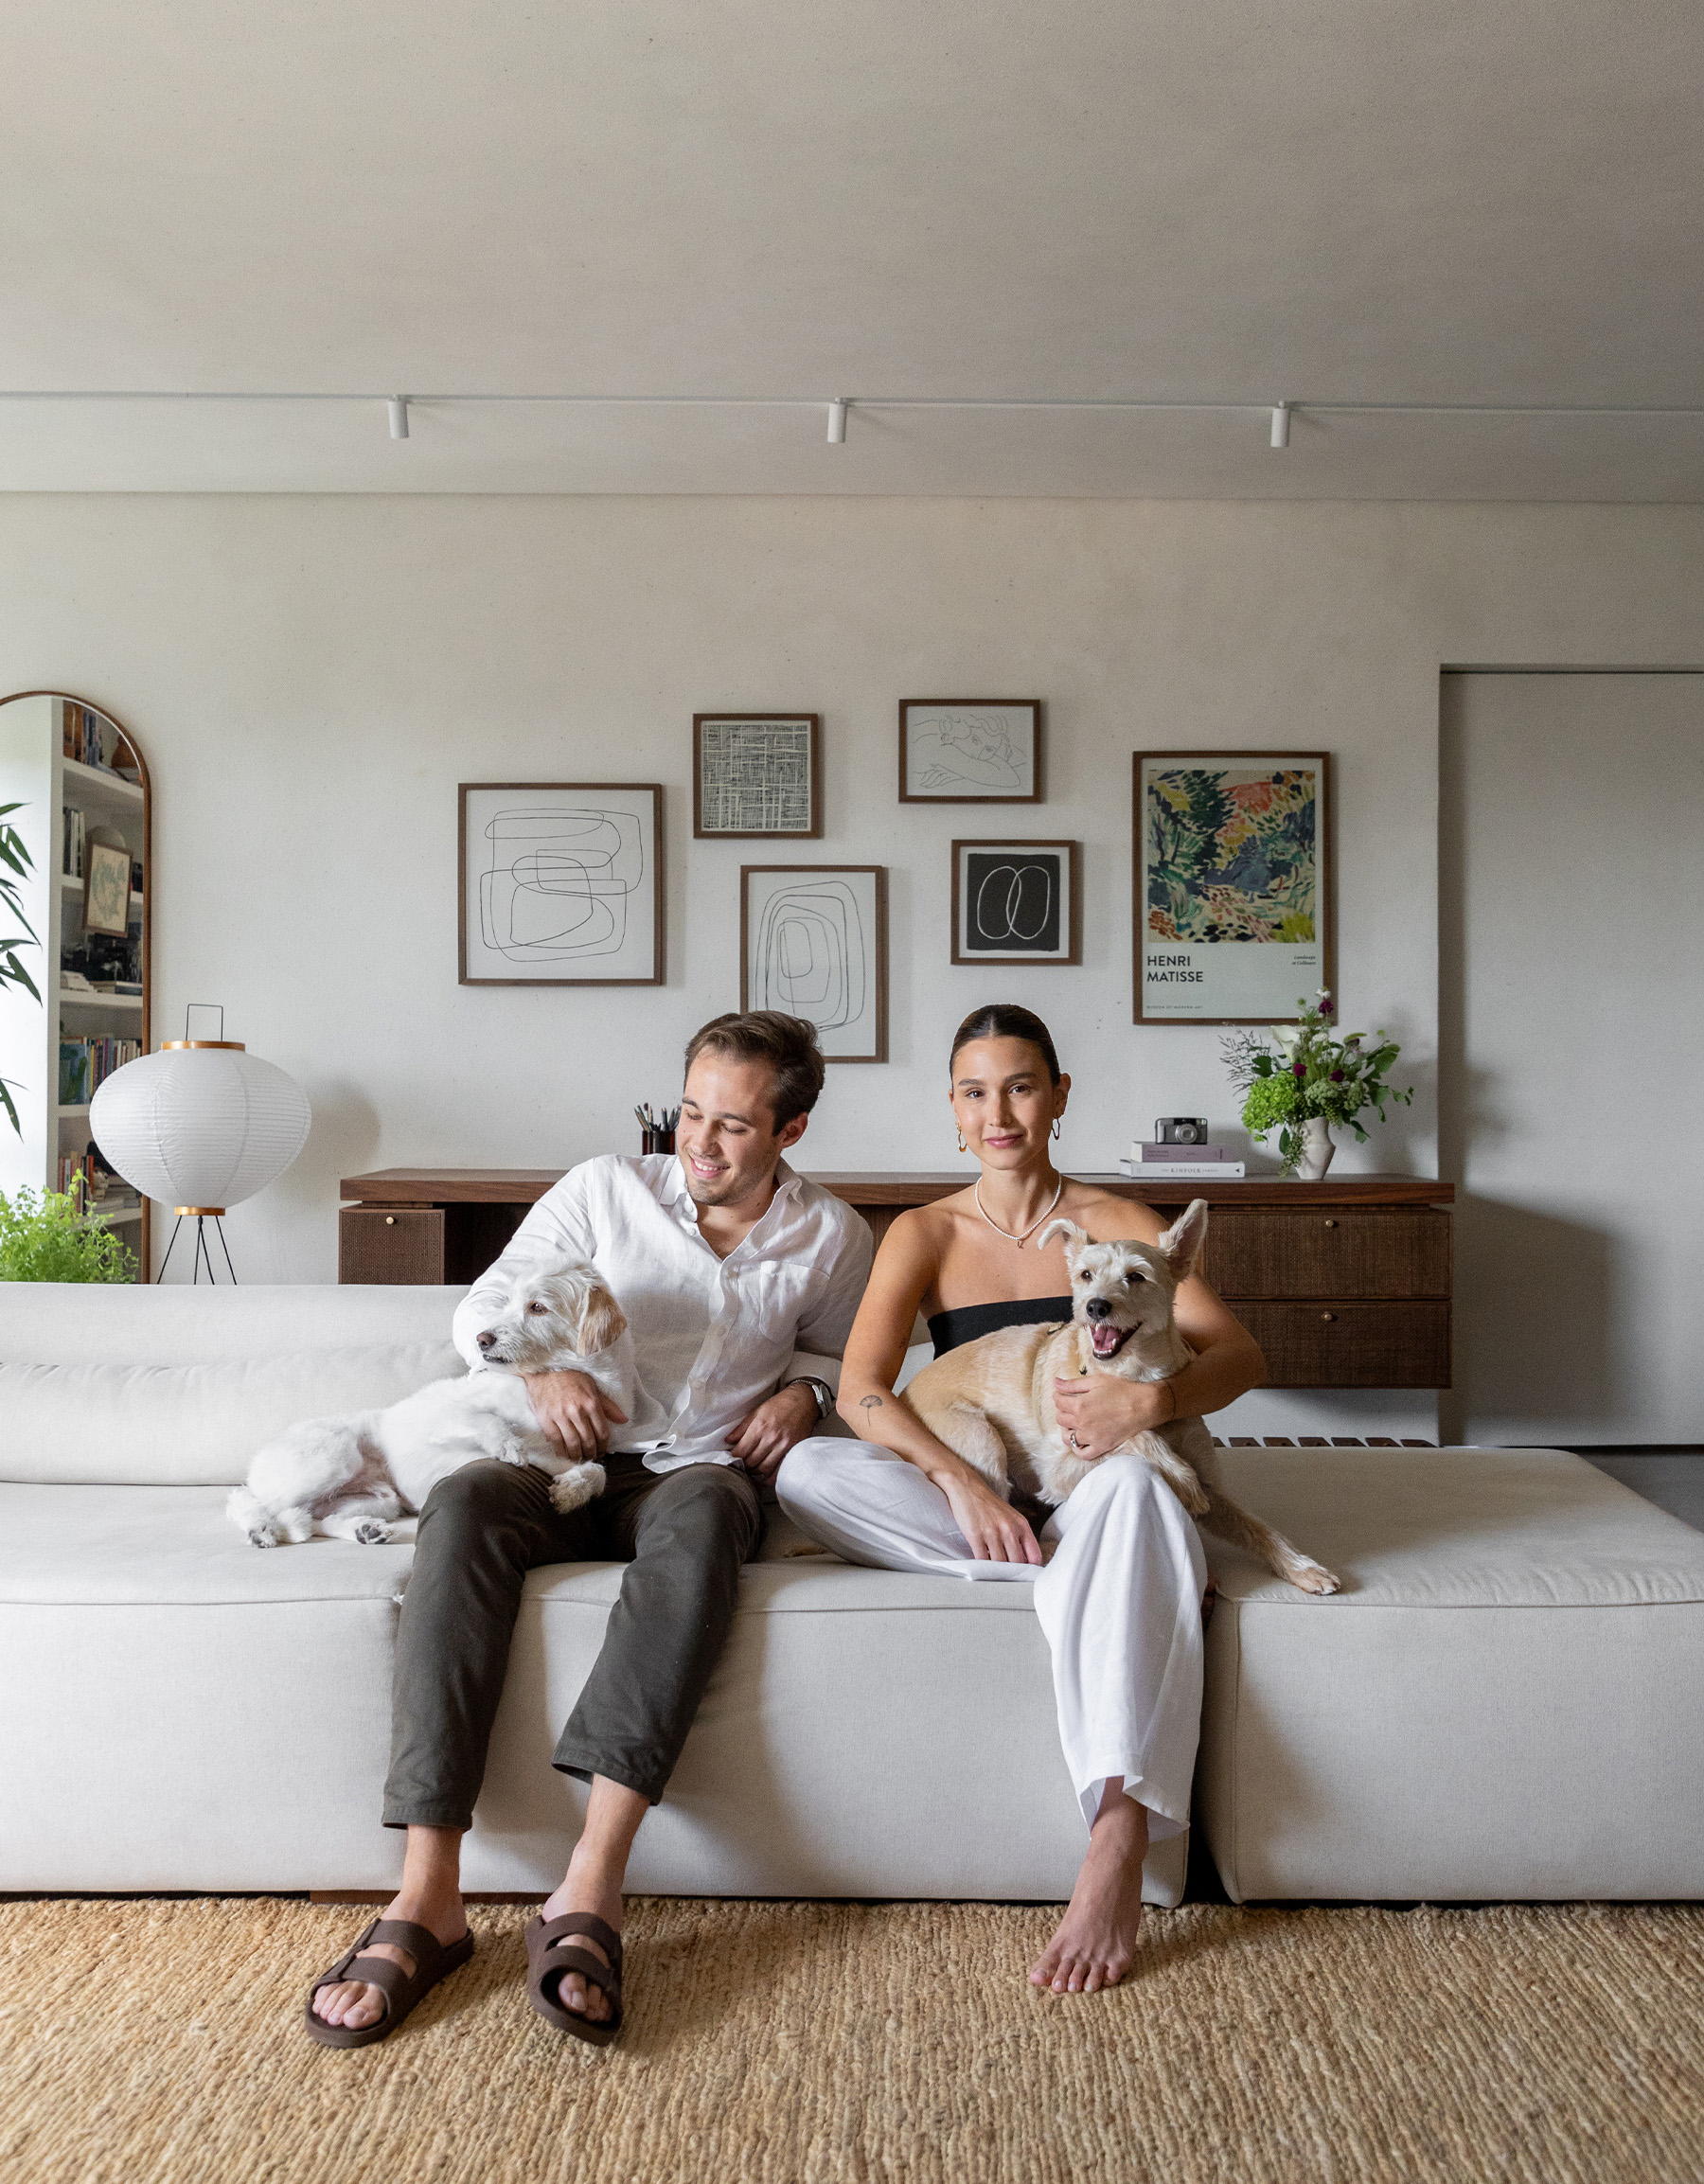 Casa minimalista com parede de quadros e móveis de família